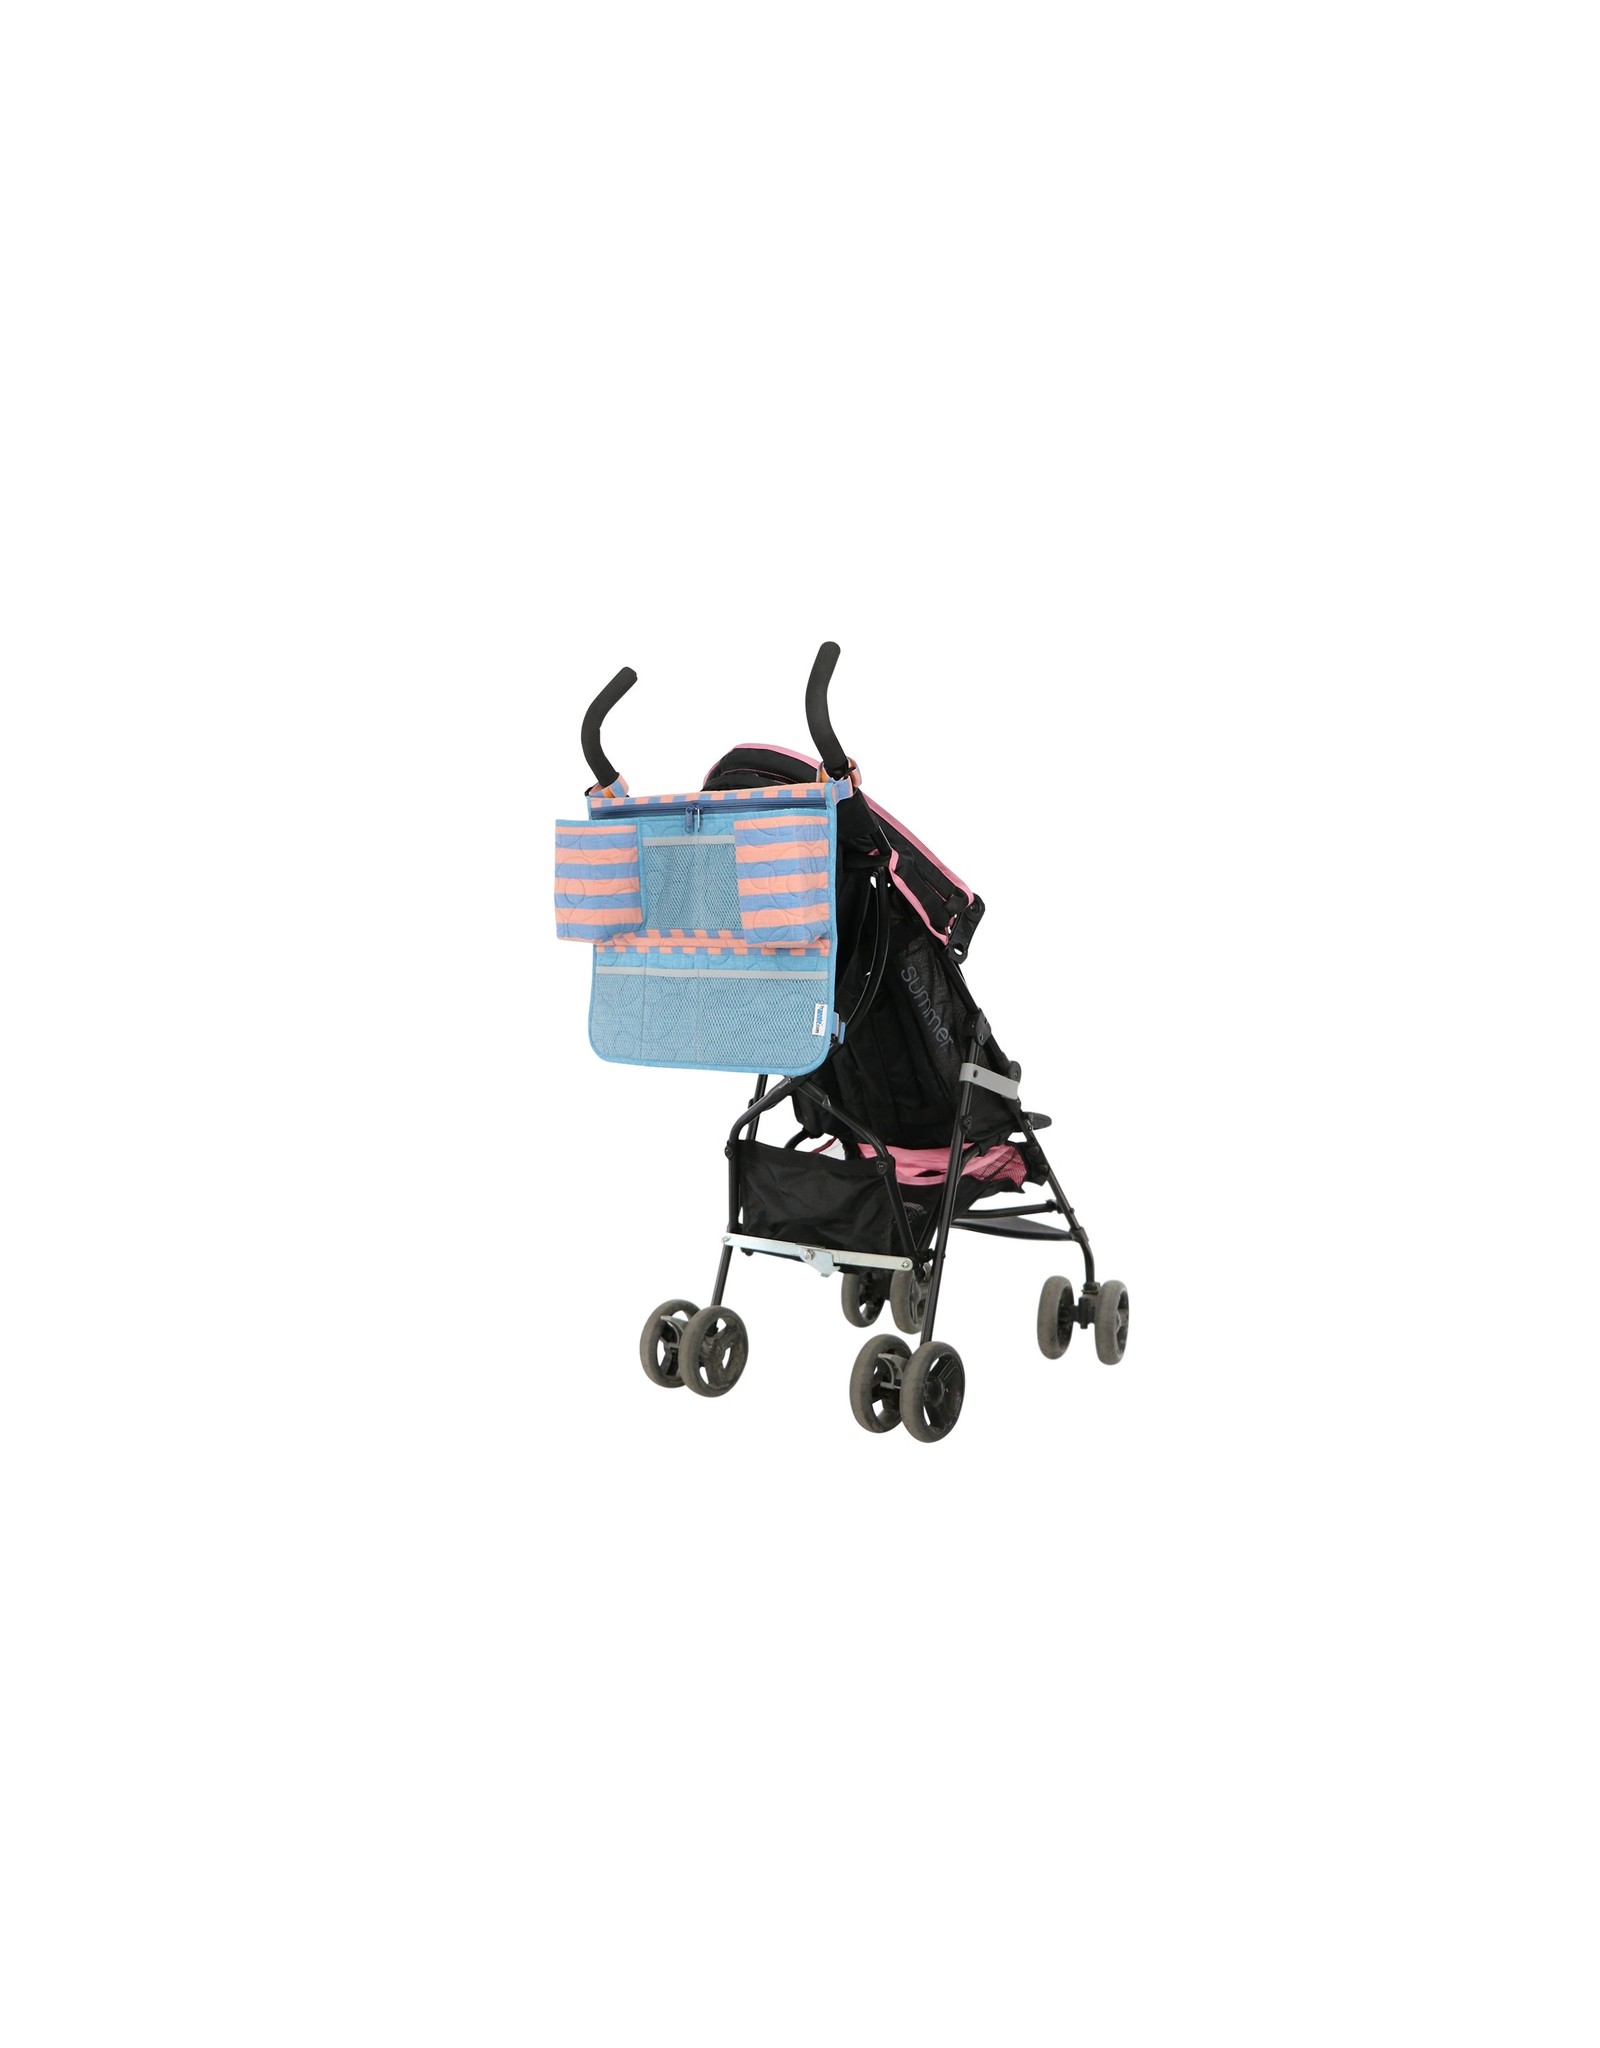 ByAnnie Backseat Babysitter 2.0 - by Annie pattern - PBA256-2